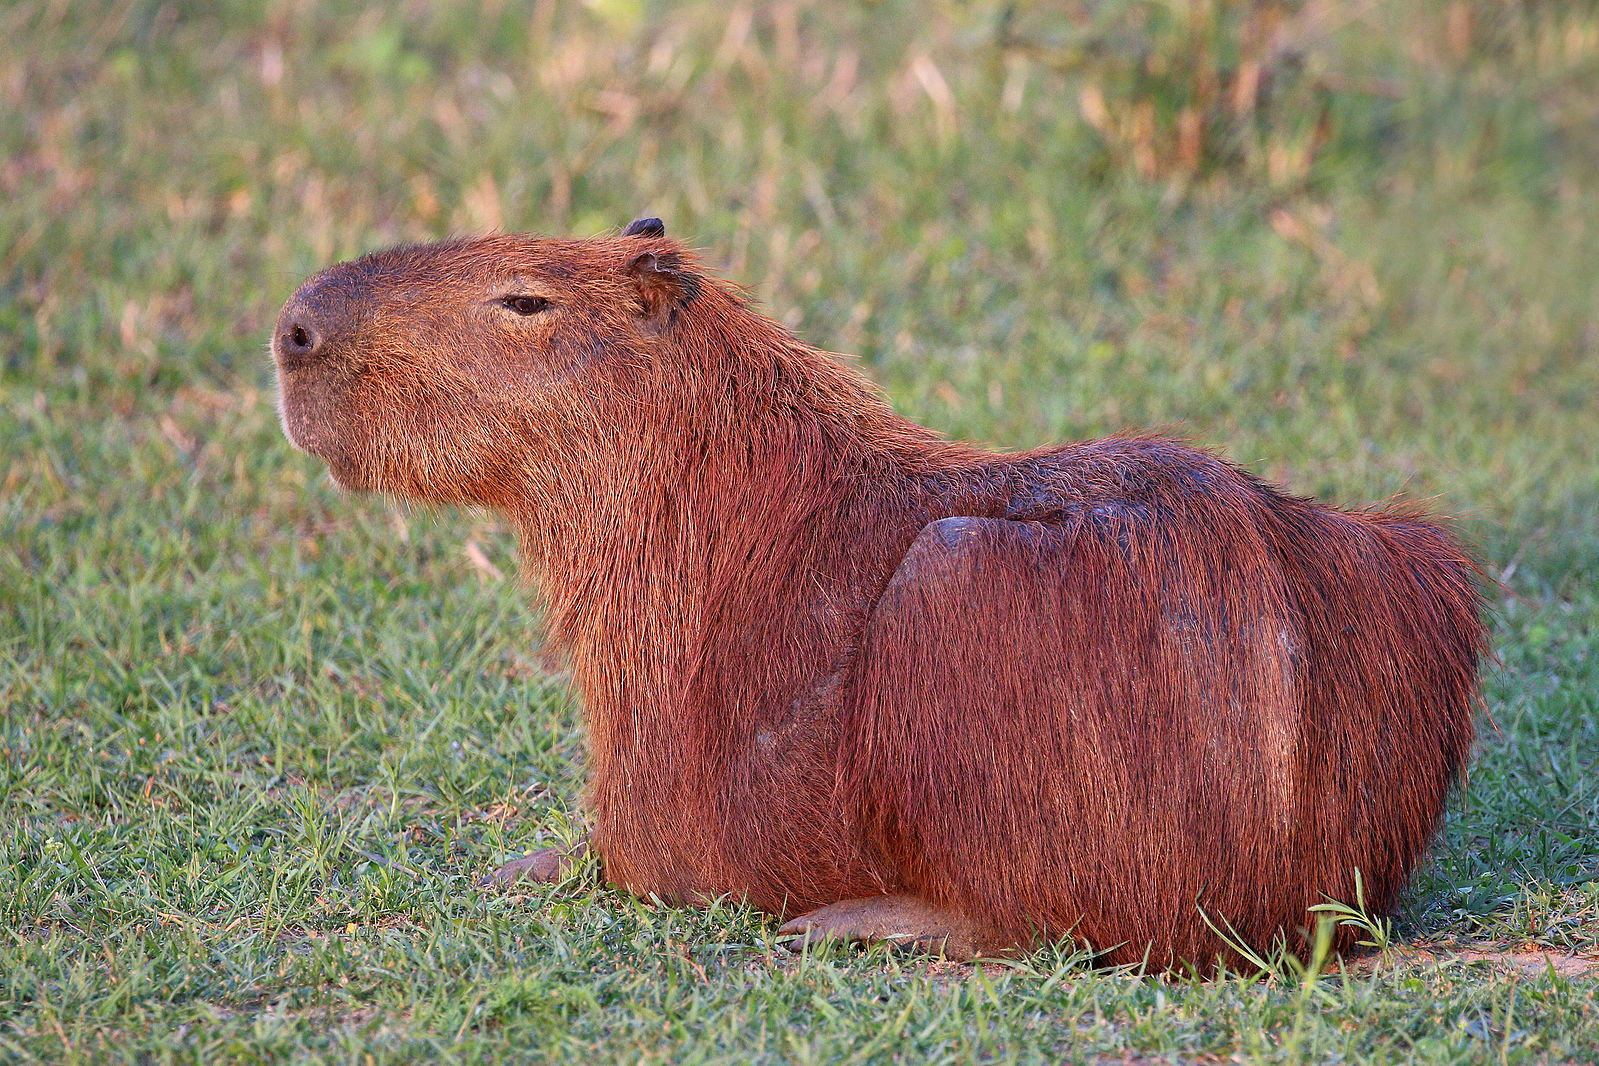 Capybara (Hydrochoerus hydrochaeris), the Pantanal, Brazil.